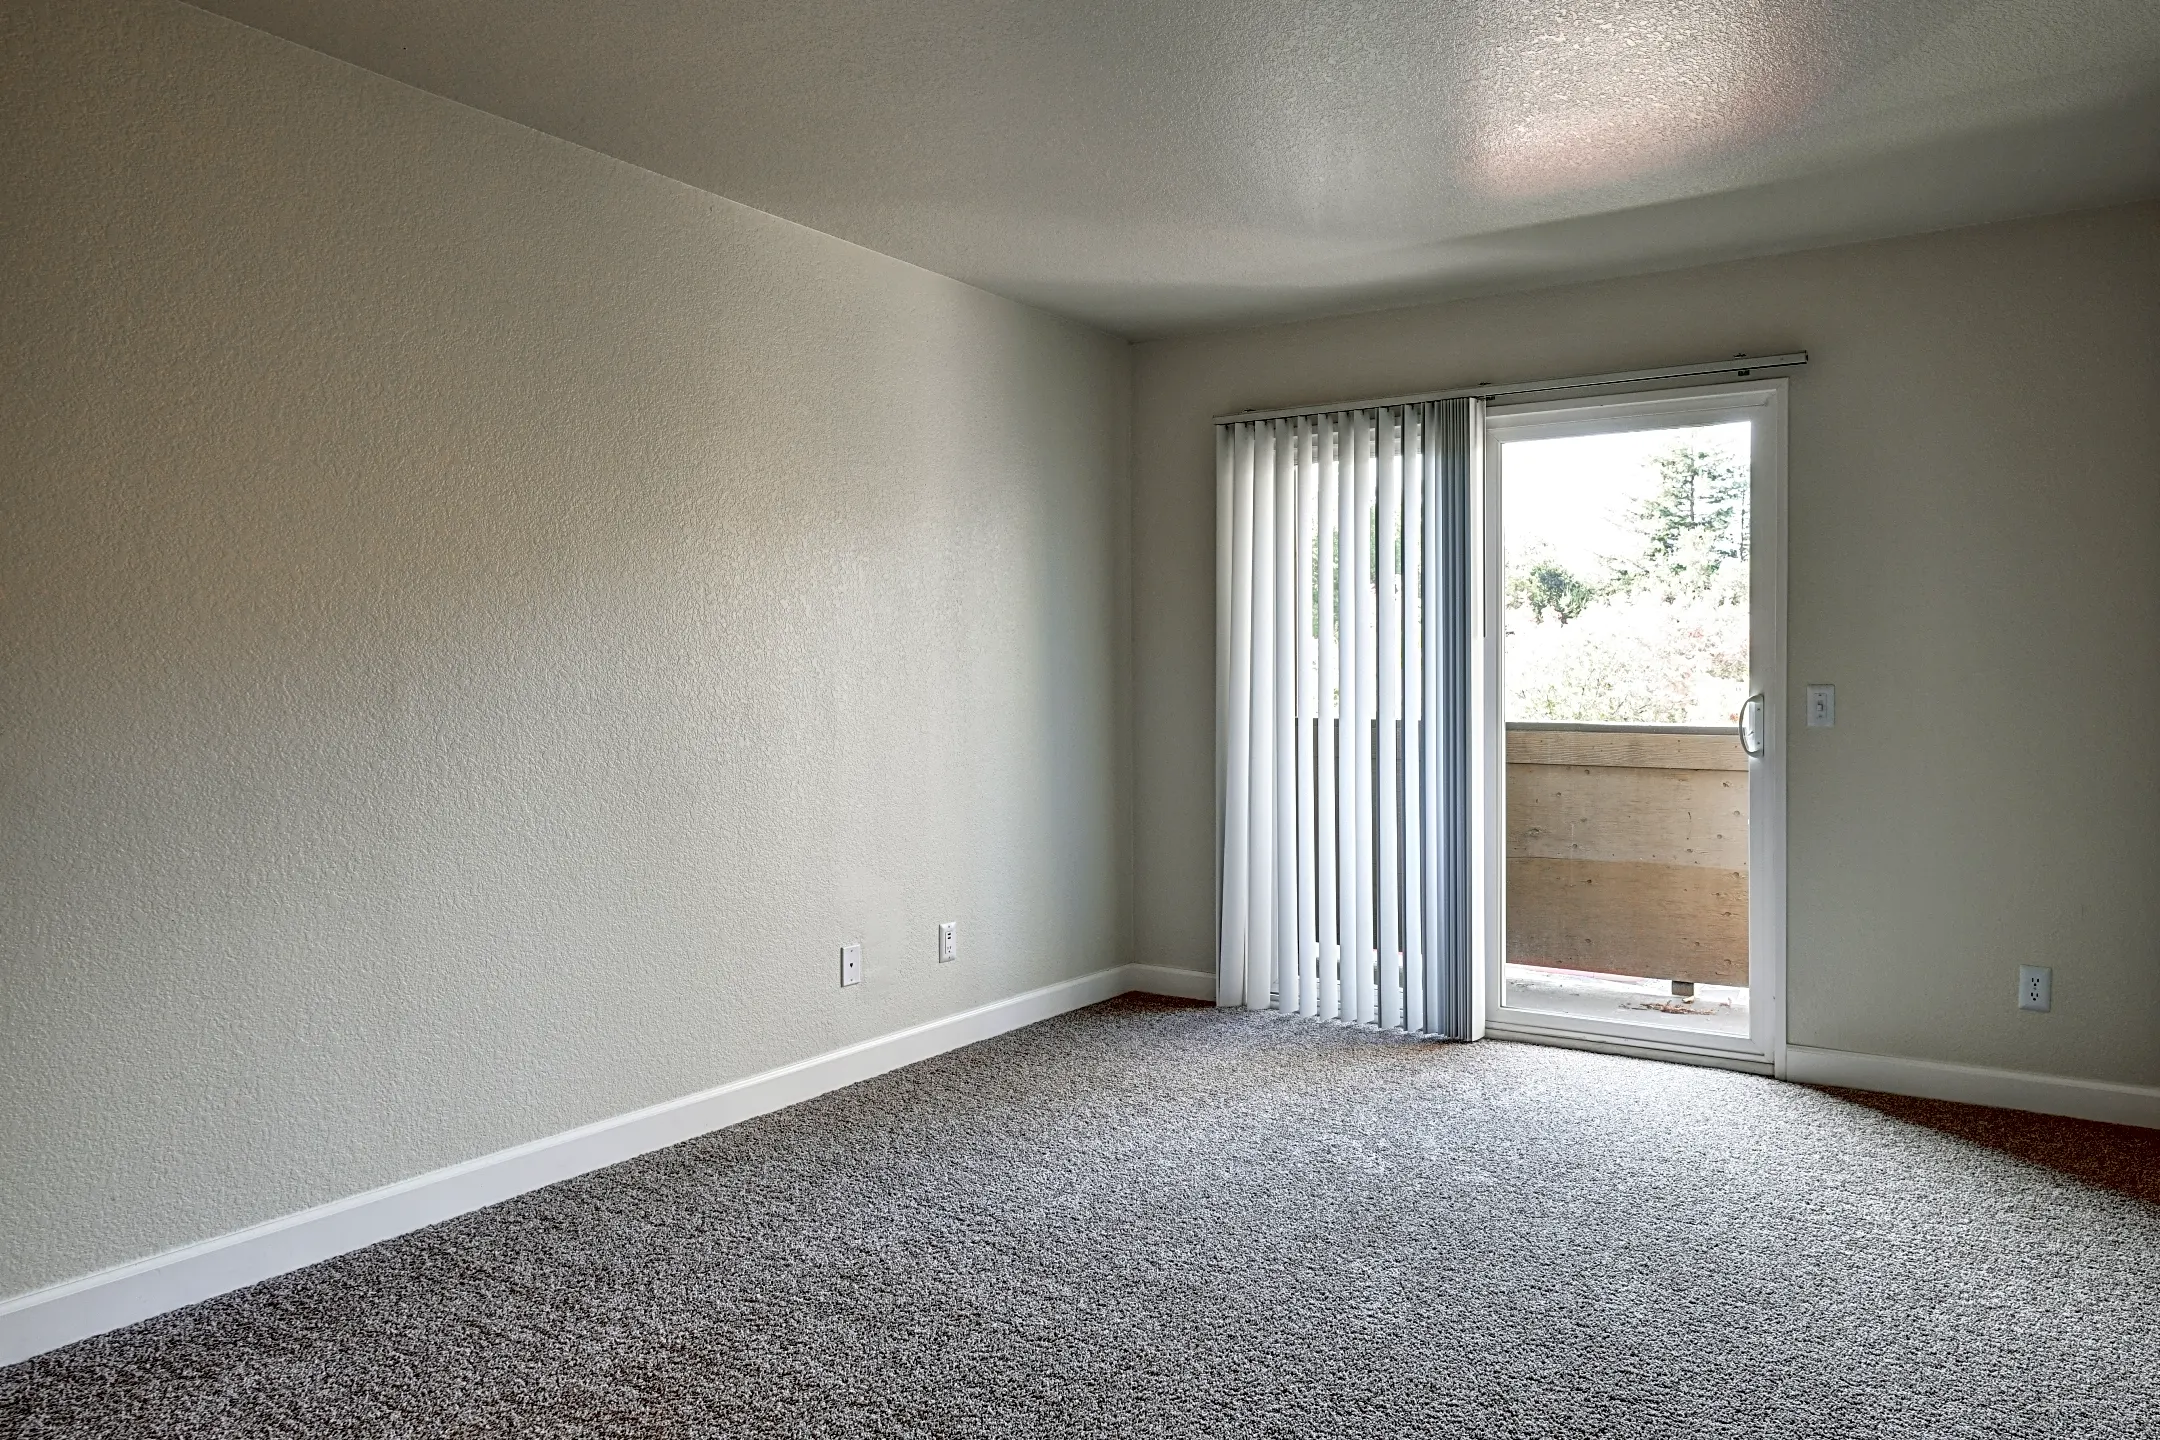 Bedroom - Spring Club Apartments - Santa Rosa, CA